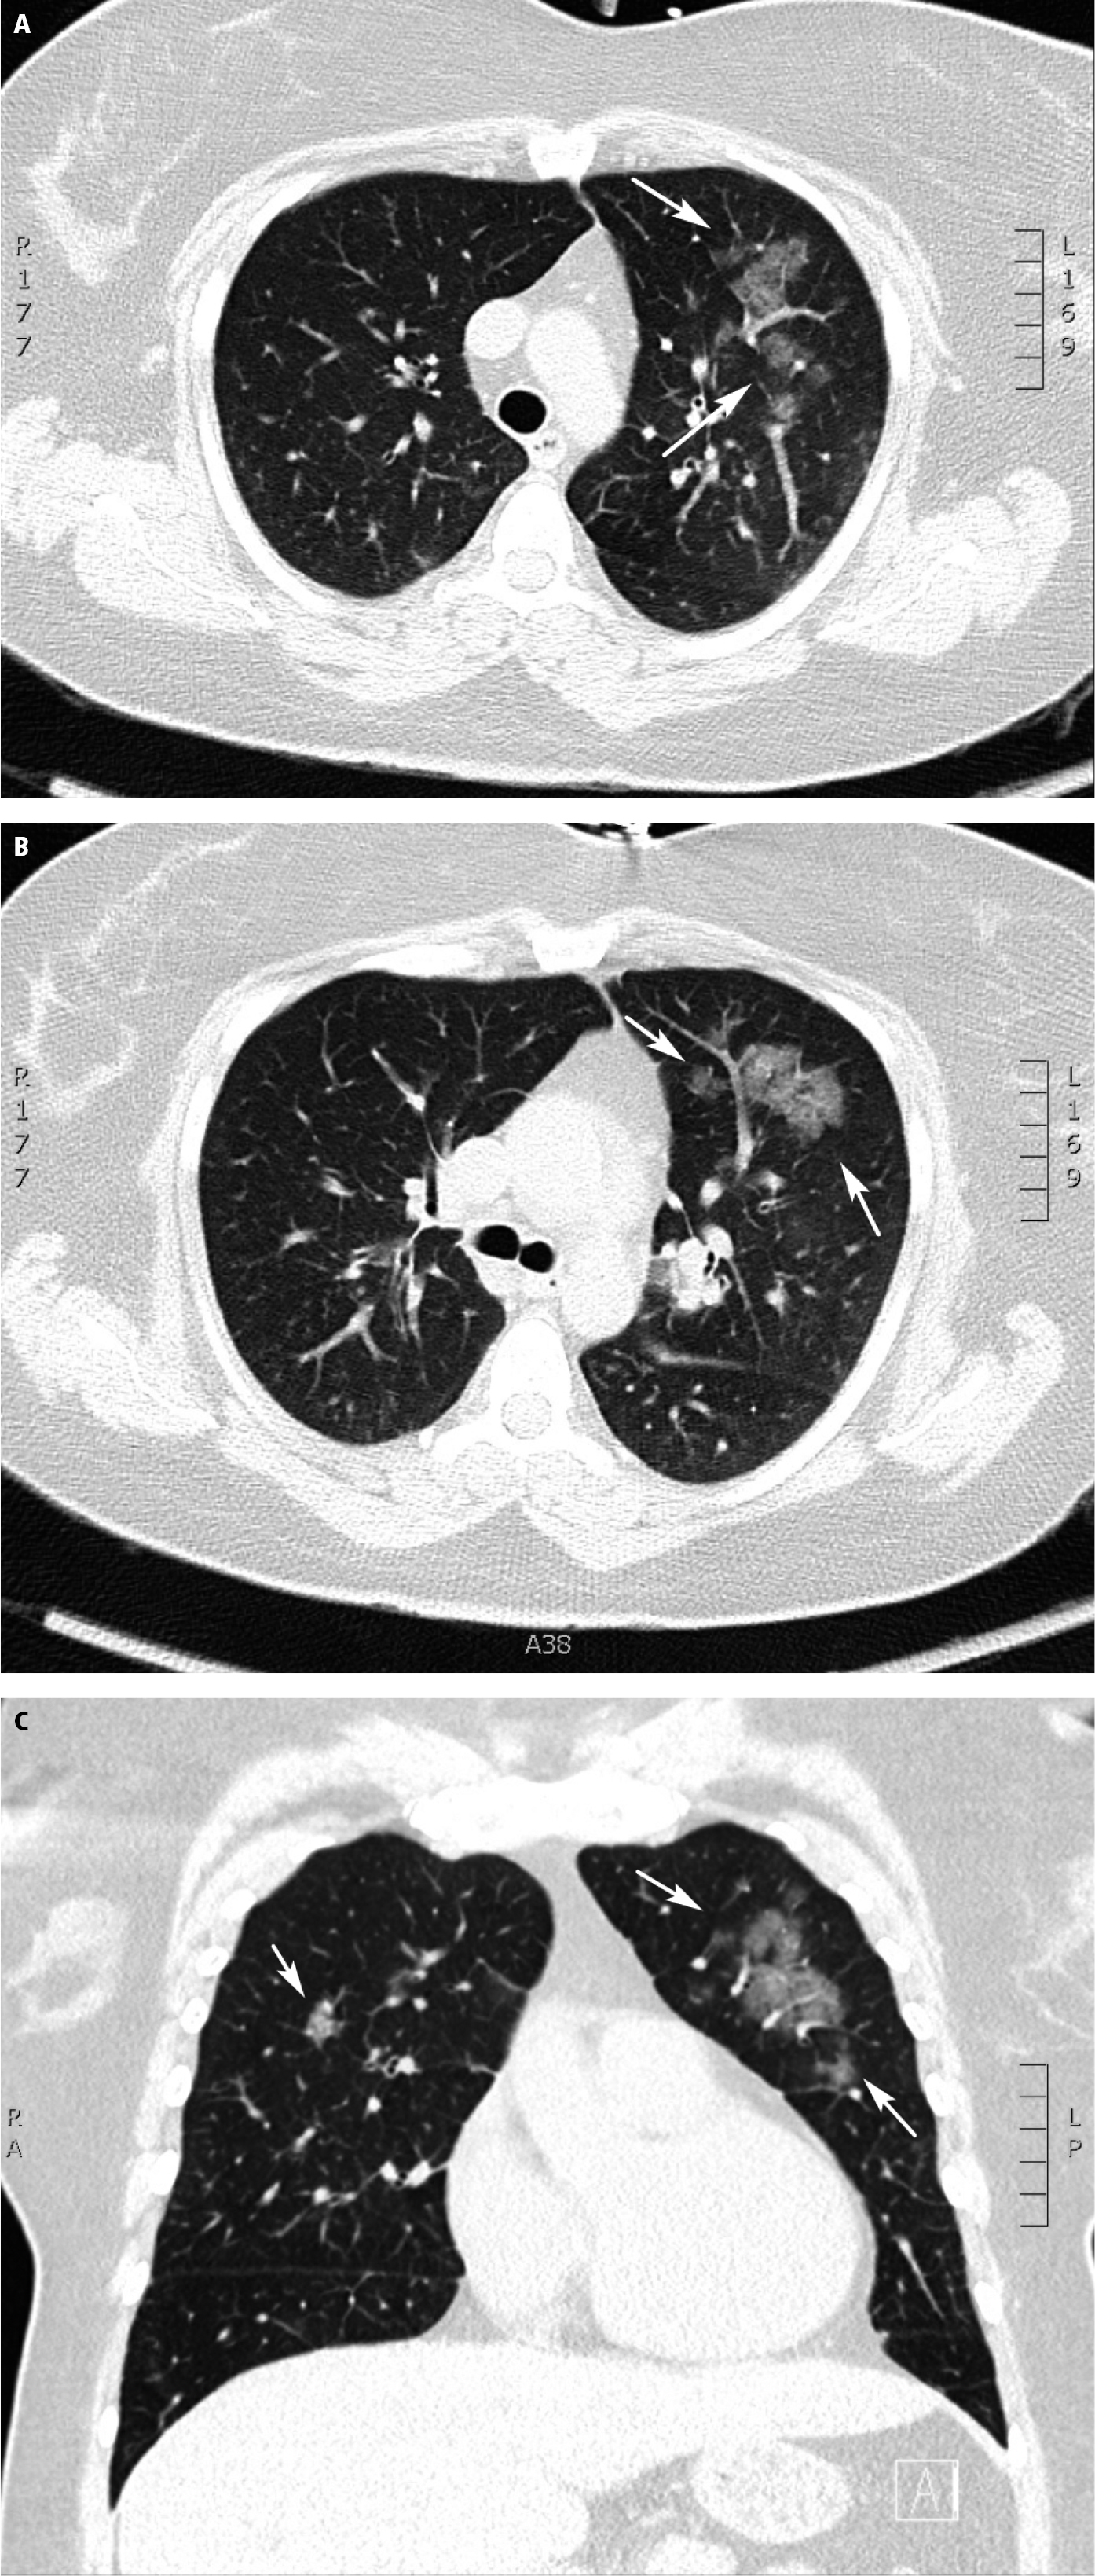  
Fig. 30.1-3.  Tomografía computarizada (TC) de una paciente de 35 años (caso n.º 1) que muestra opacidades redondeadas en vidrio esmerilado (flechas) en los planos axial  ( A, B )  y coronal  ( C )  